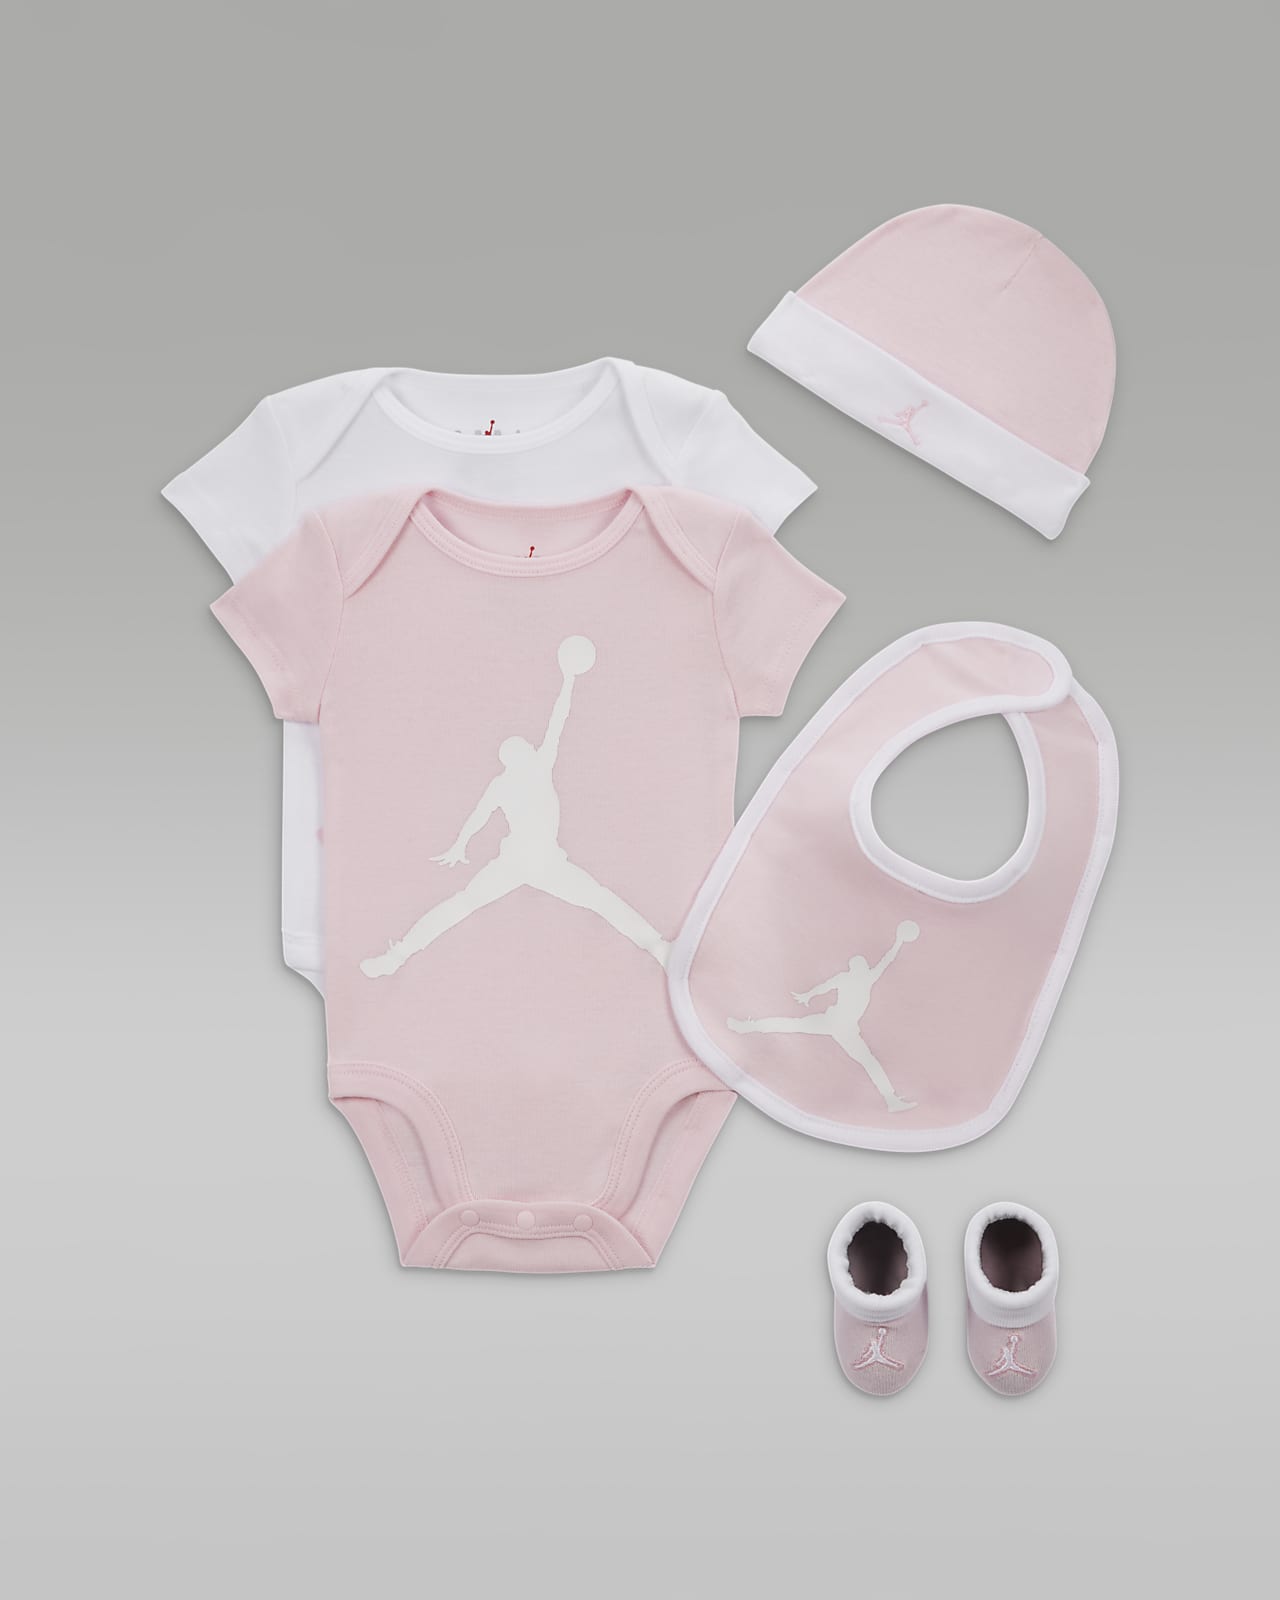 Femdelat gåvoset Jordan Core med body för baby